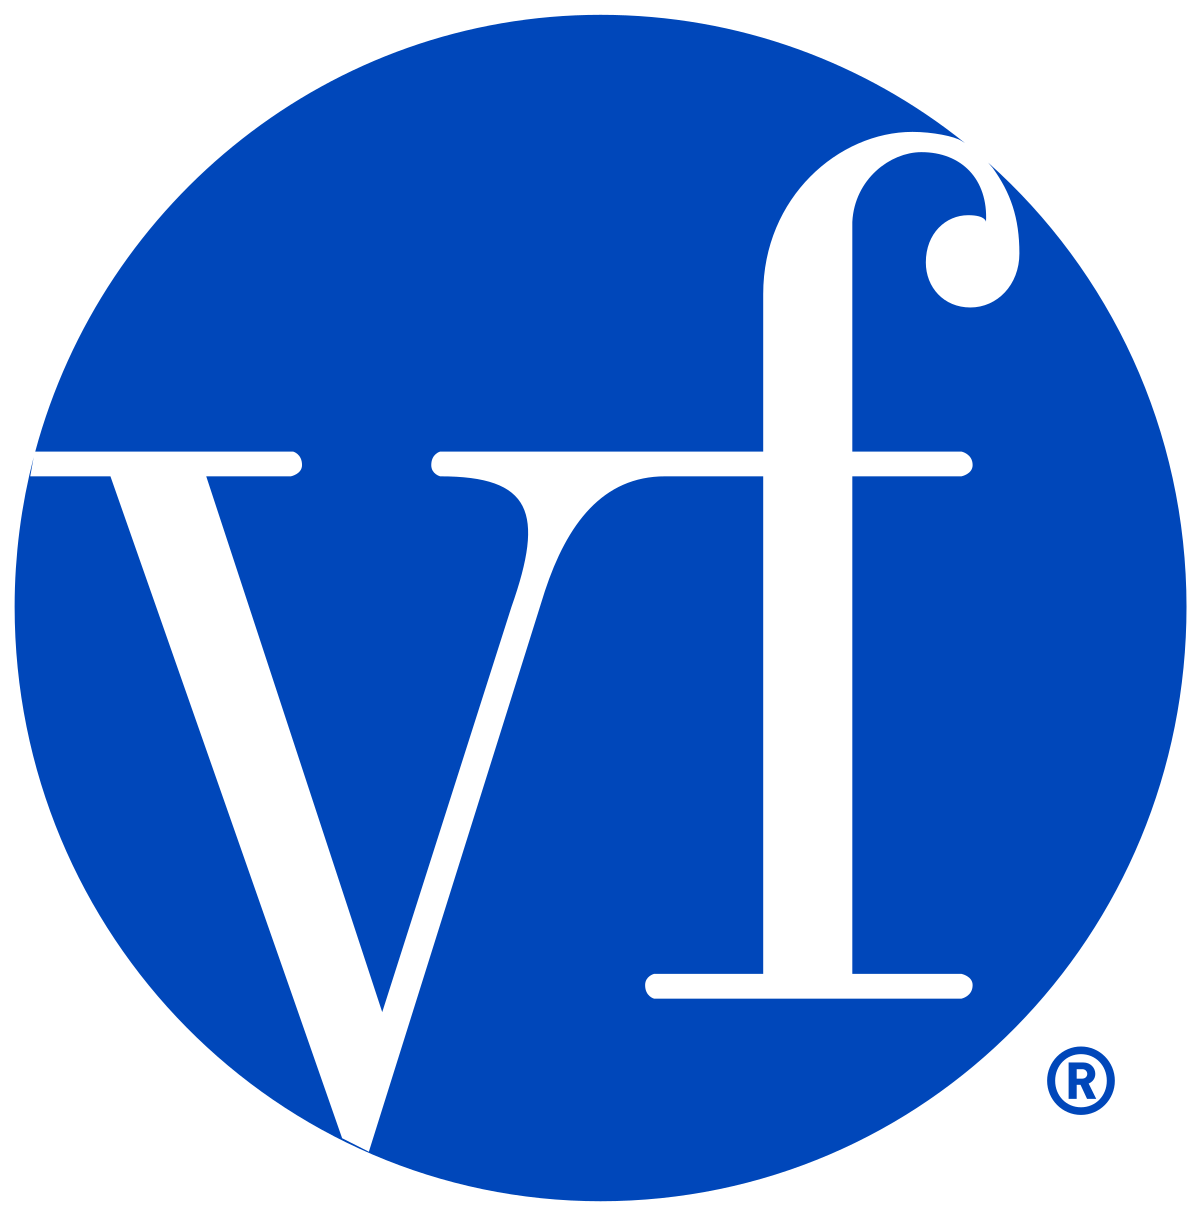 VF Corp.